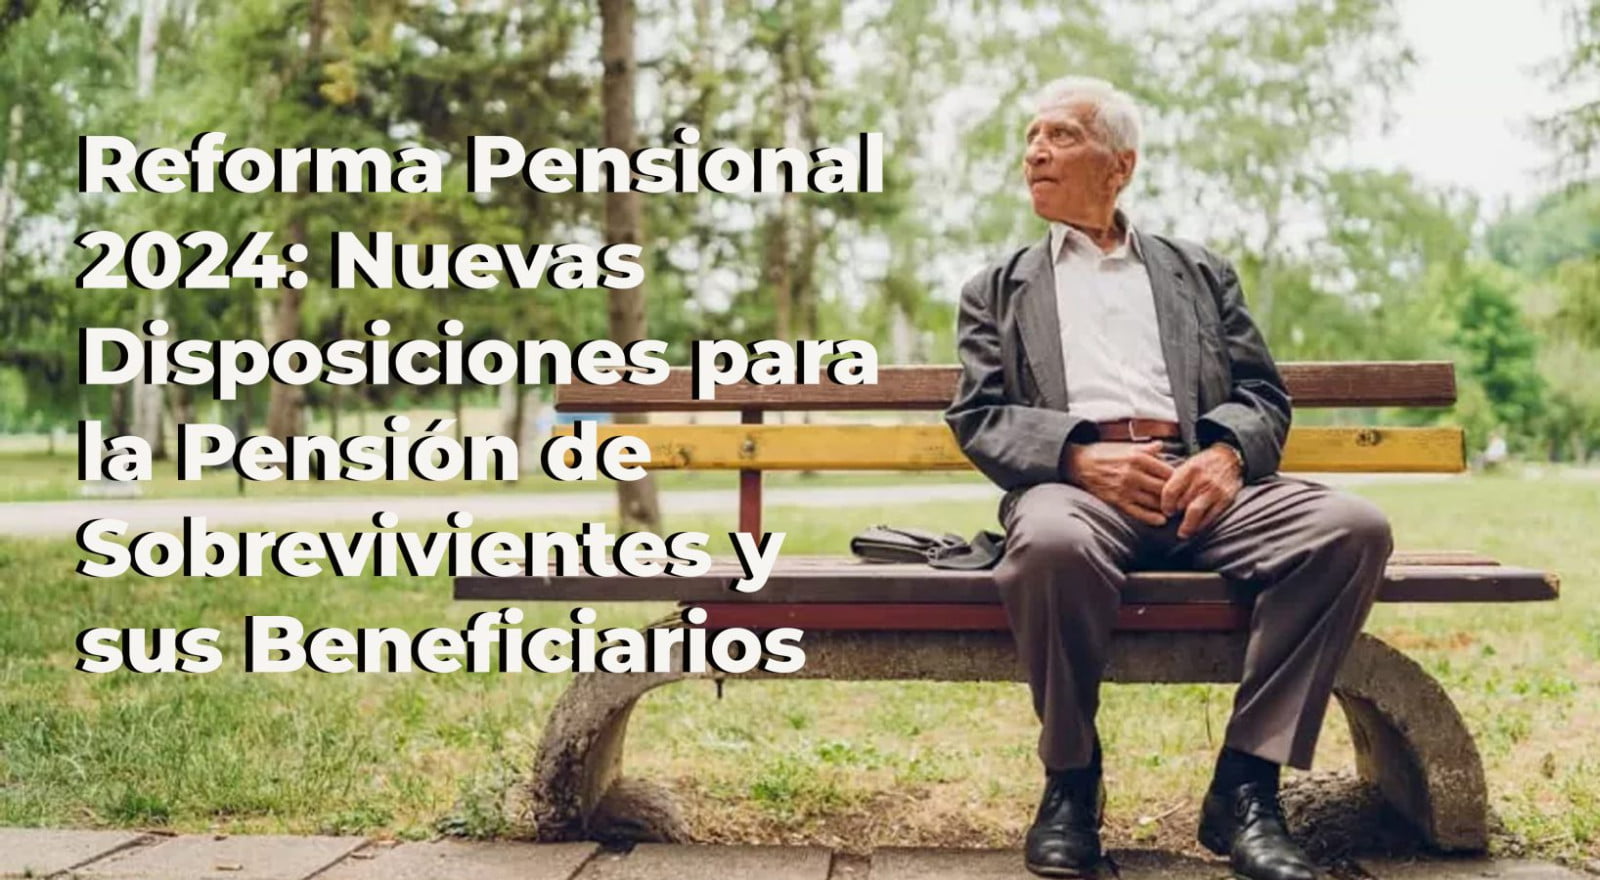 Reforma Pensional: Esto es lo que Dice el Proyecto sobre la Pensión de Sobrevivientes